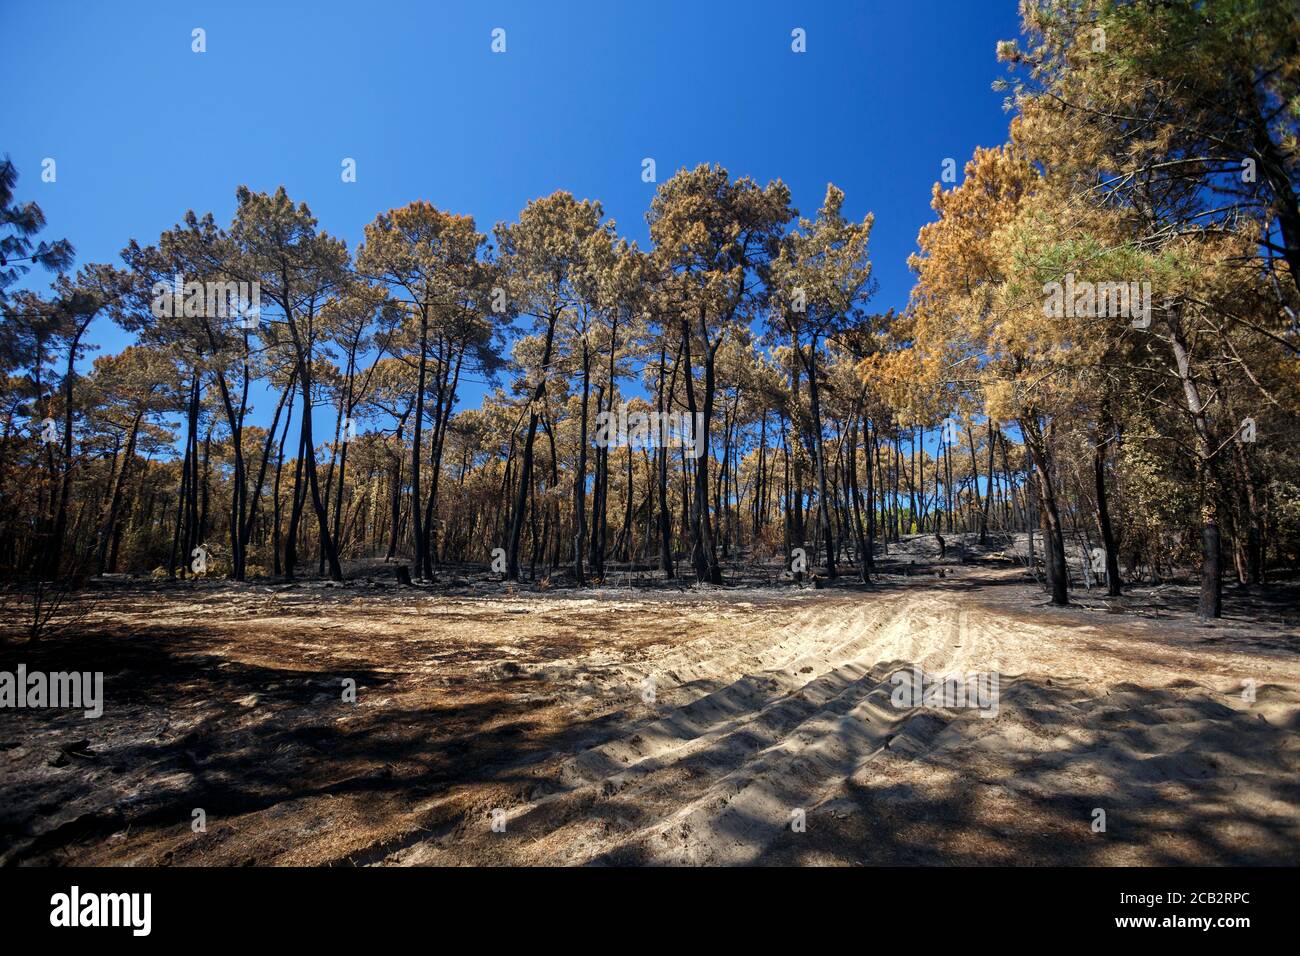 Pinos marítimos quemados (Pinus pinaster) en la época del incendio del bosque de Chiberta (Anglet - Pirineos Atlánticos - Francia). Fuego salvaje. Blaze. Foto de stock